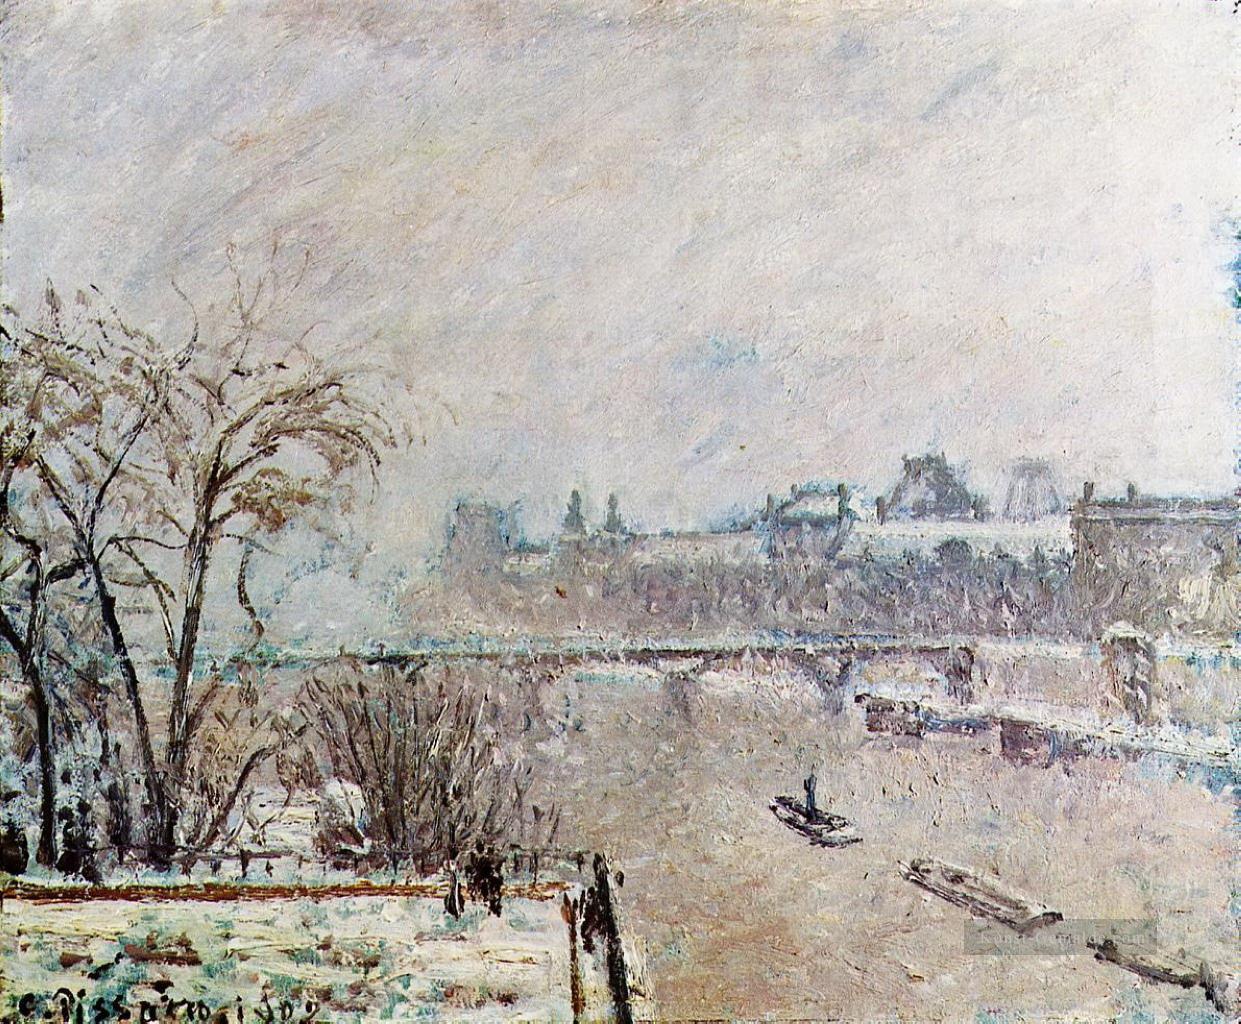 die Seine vom neuf Winter pont gesehen 1902 Camille Pissarro Ölgemälde